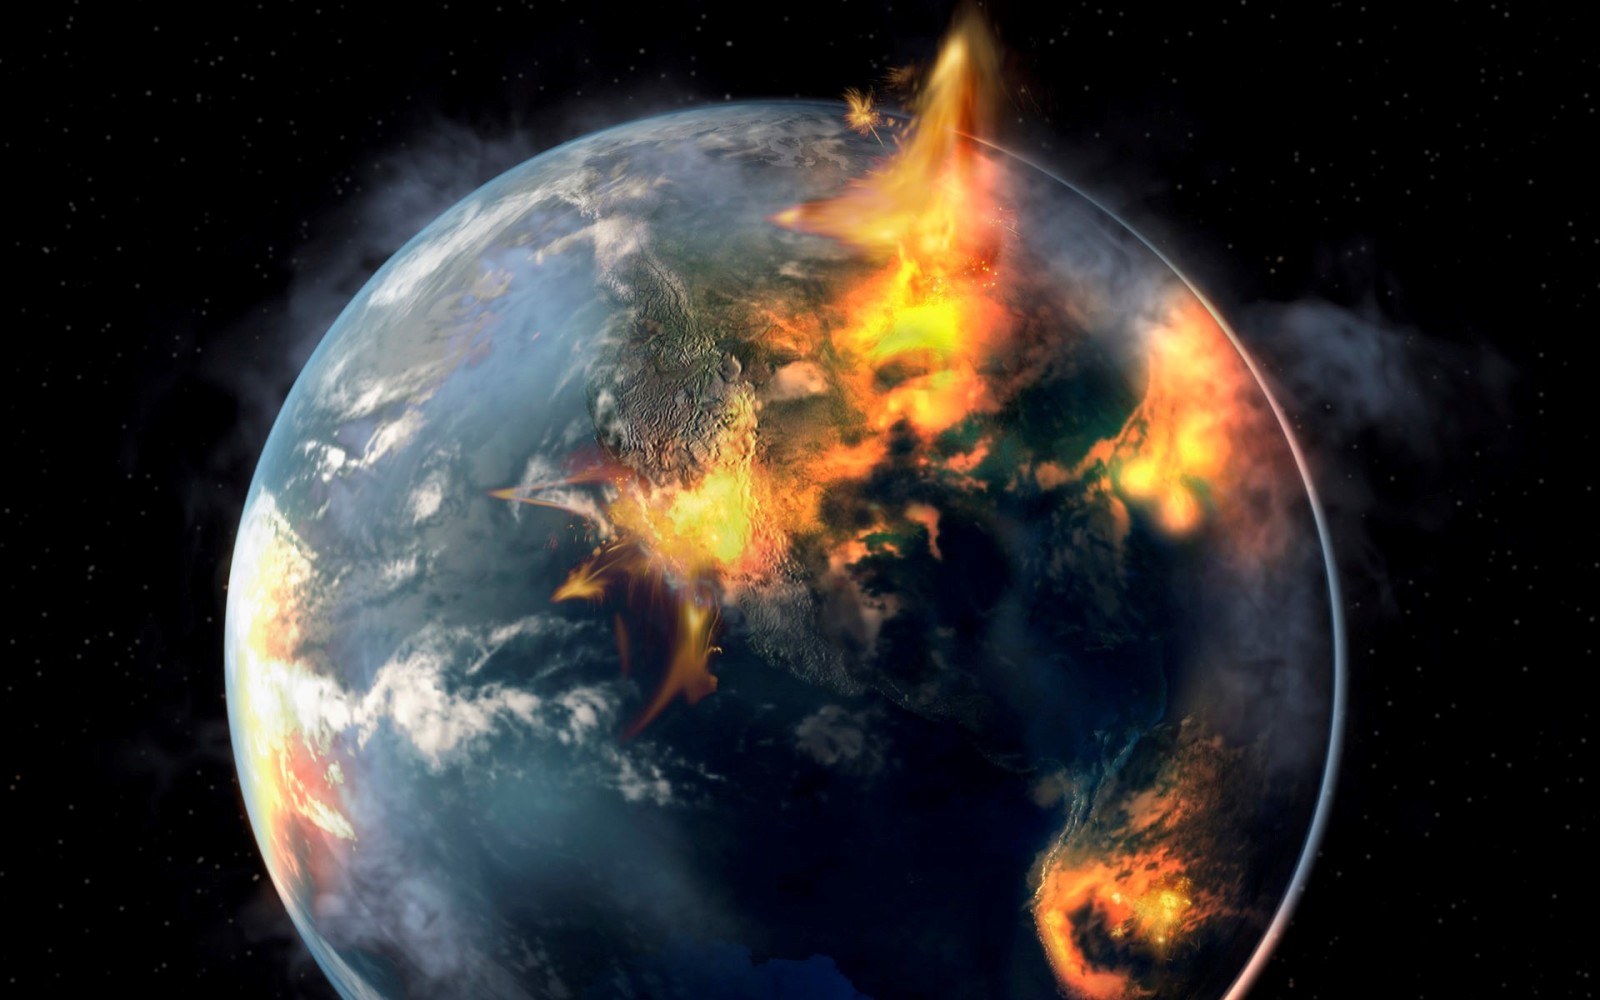 ngọn lửa, Hành tinh, khoa học viễn tưởng, sự phá hủy